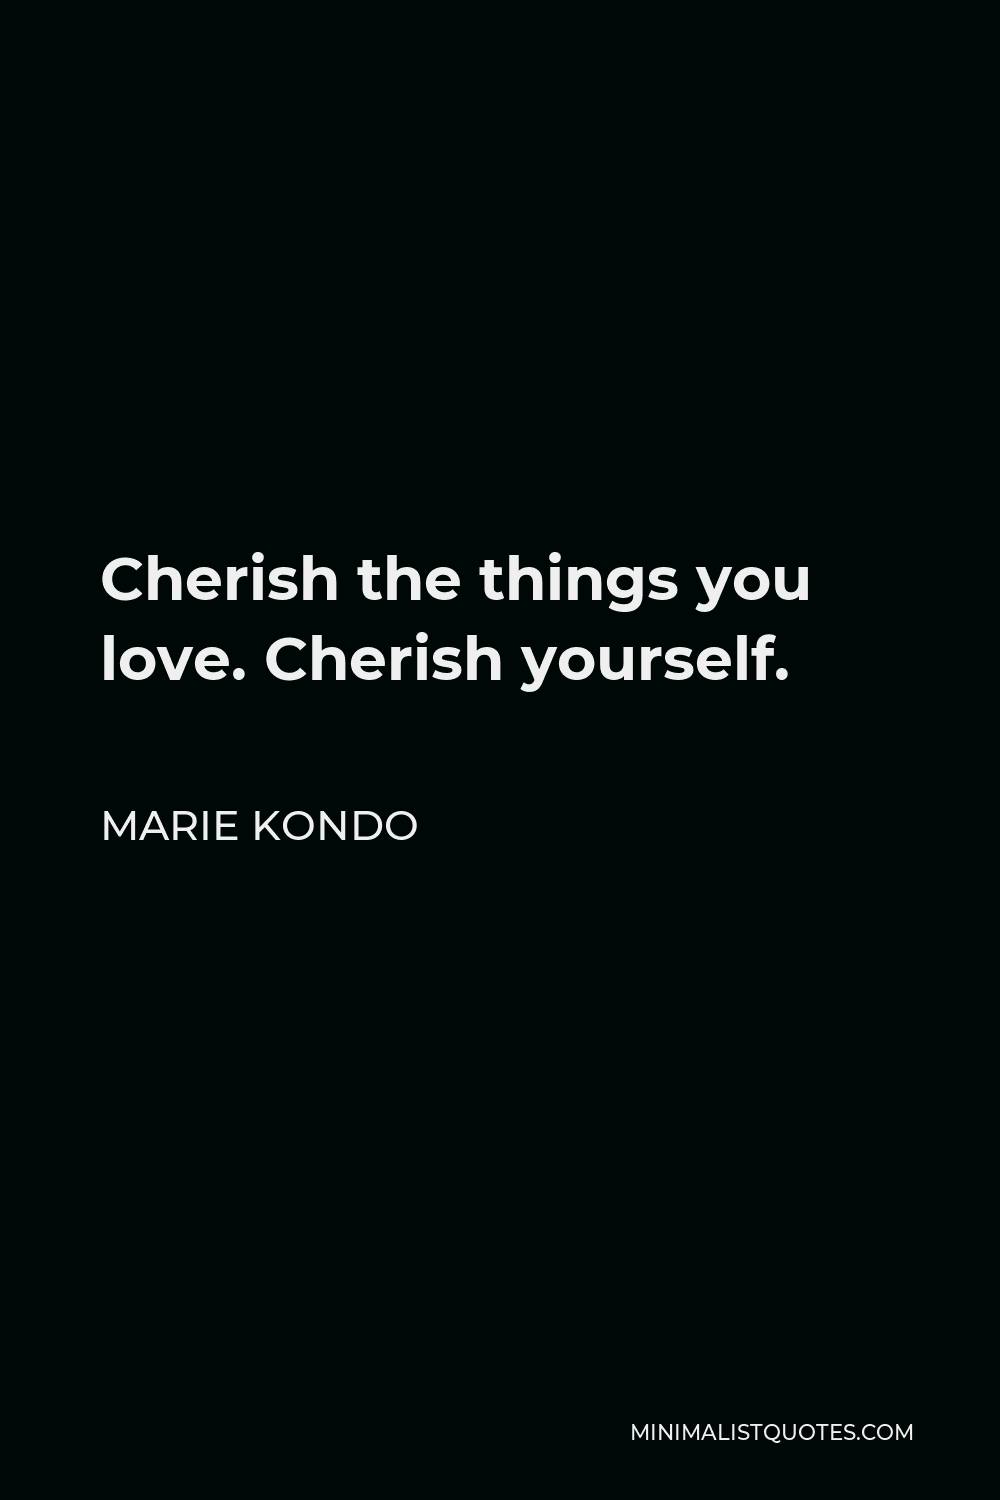 Marie Kondo Quote - Cherish the things you love. Cherish yourself.